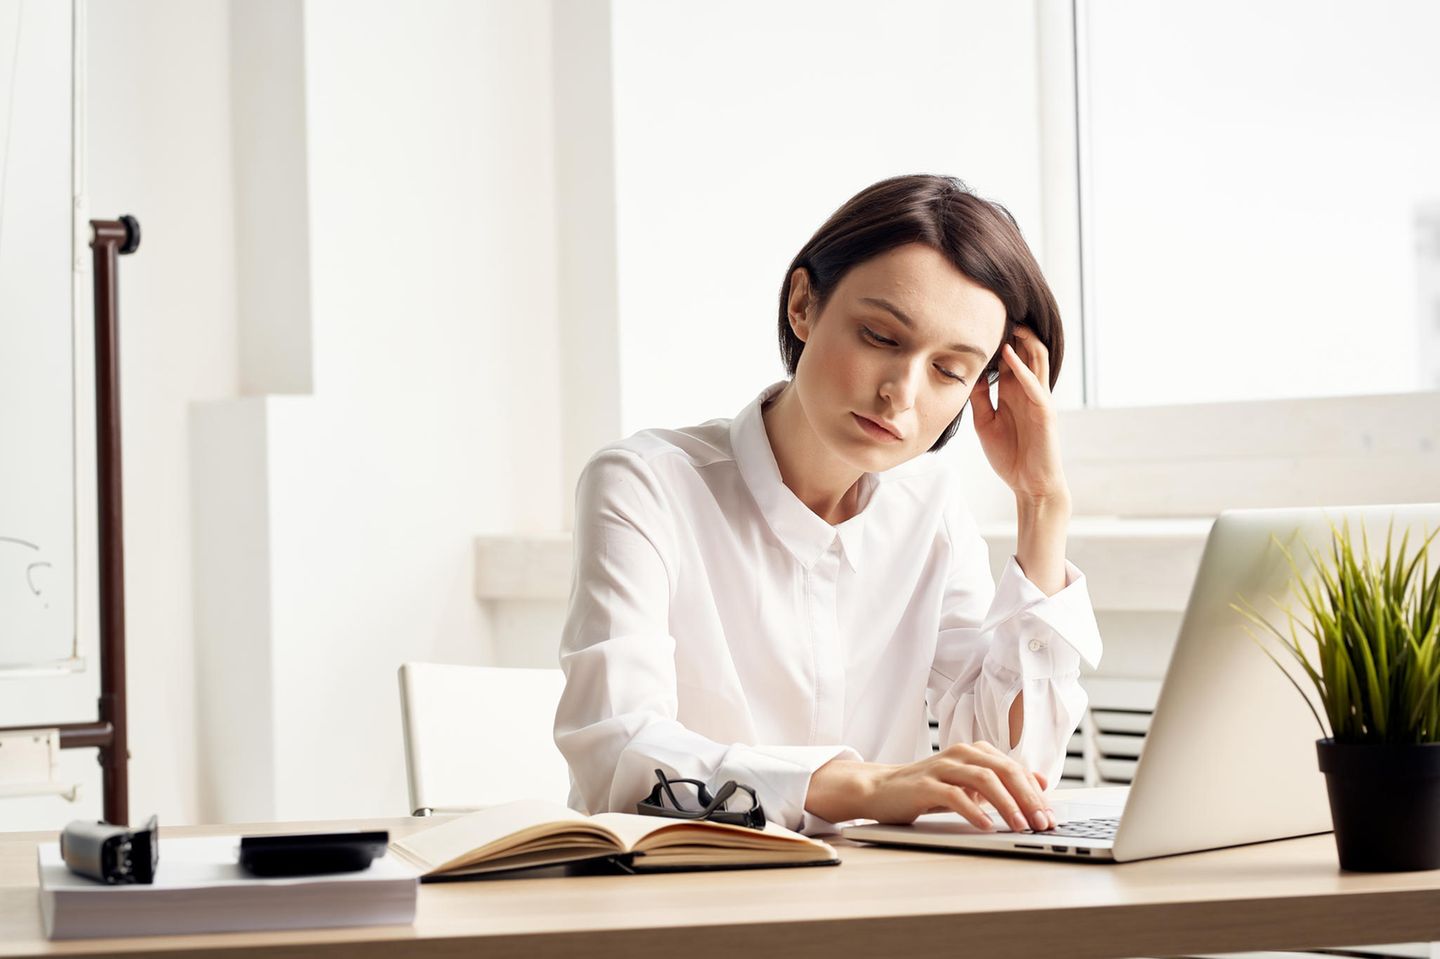 Müde Augen: Frau am Schreibtisch sieht müde aus